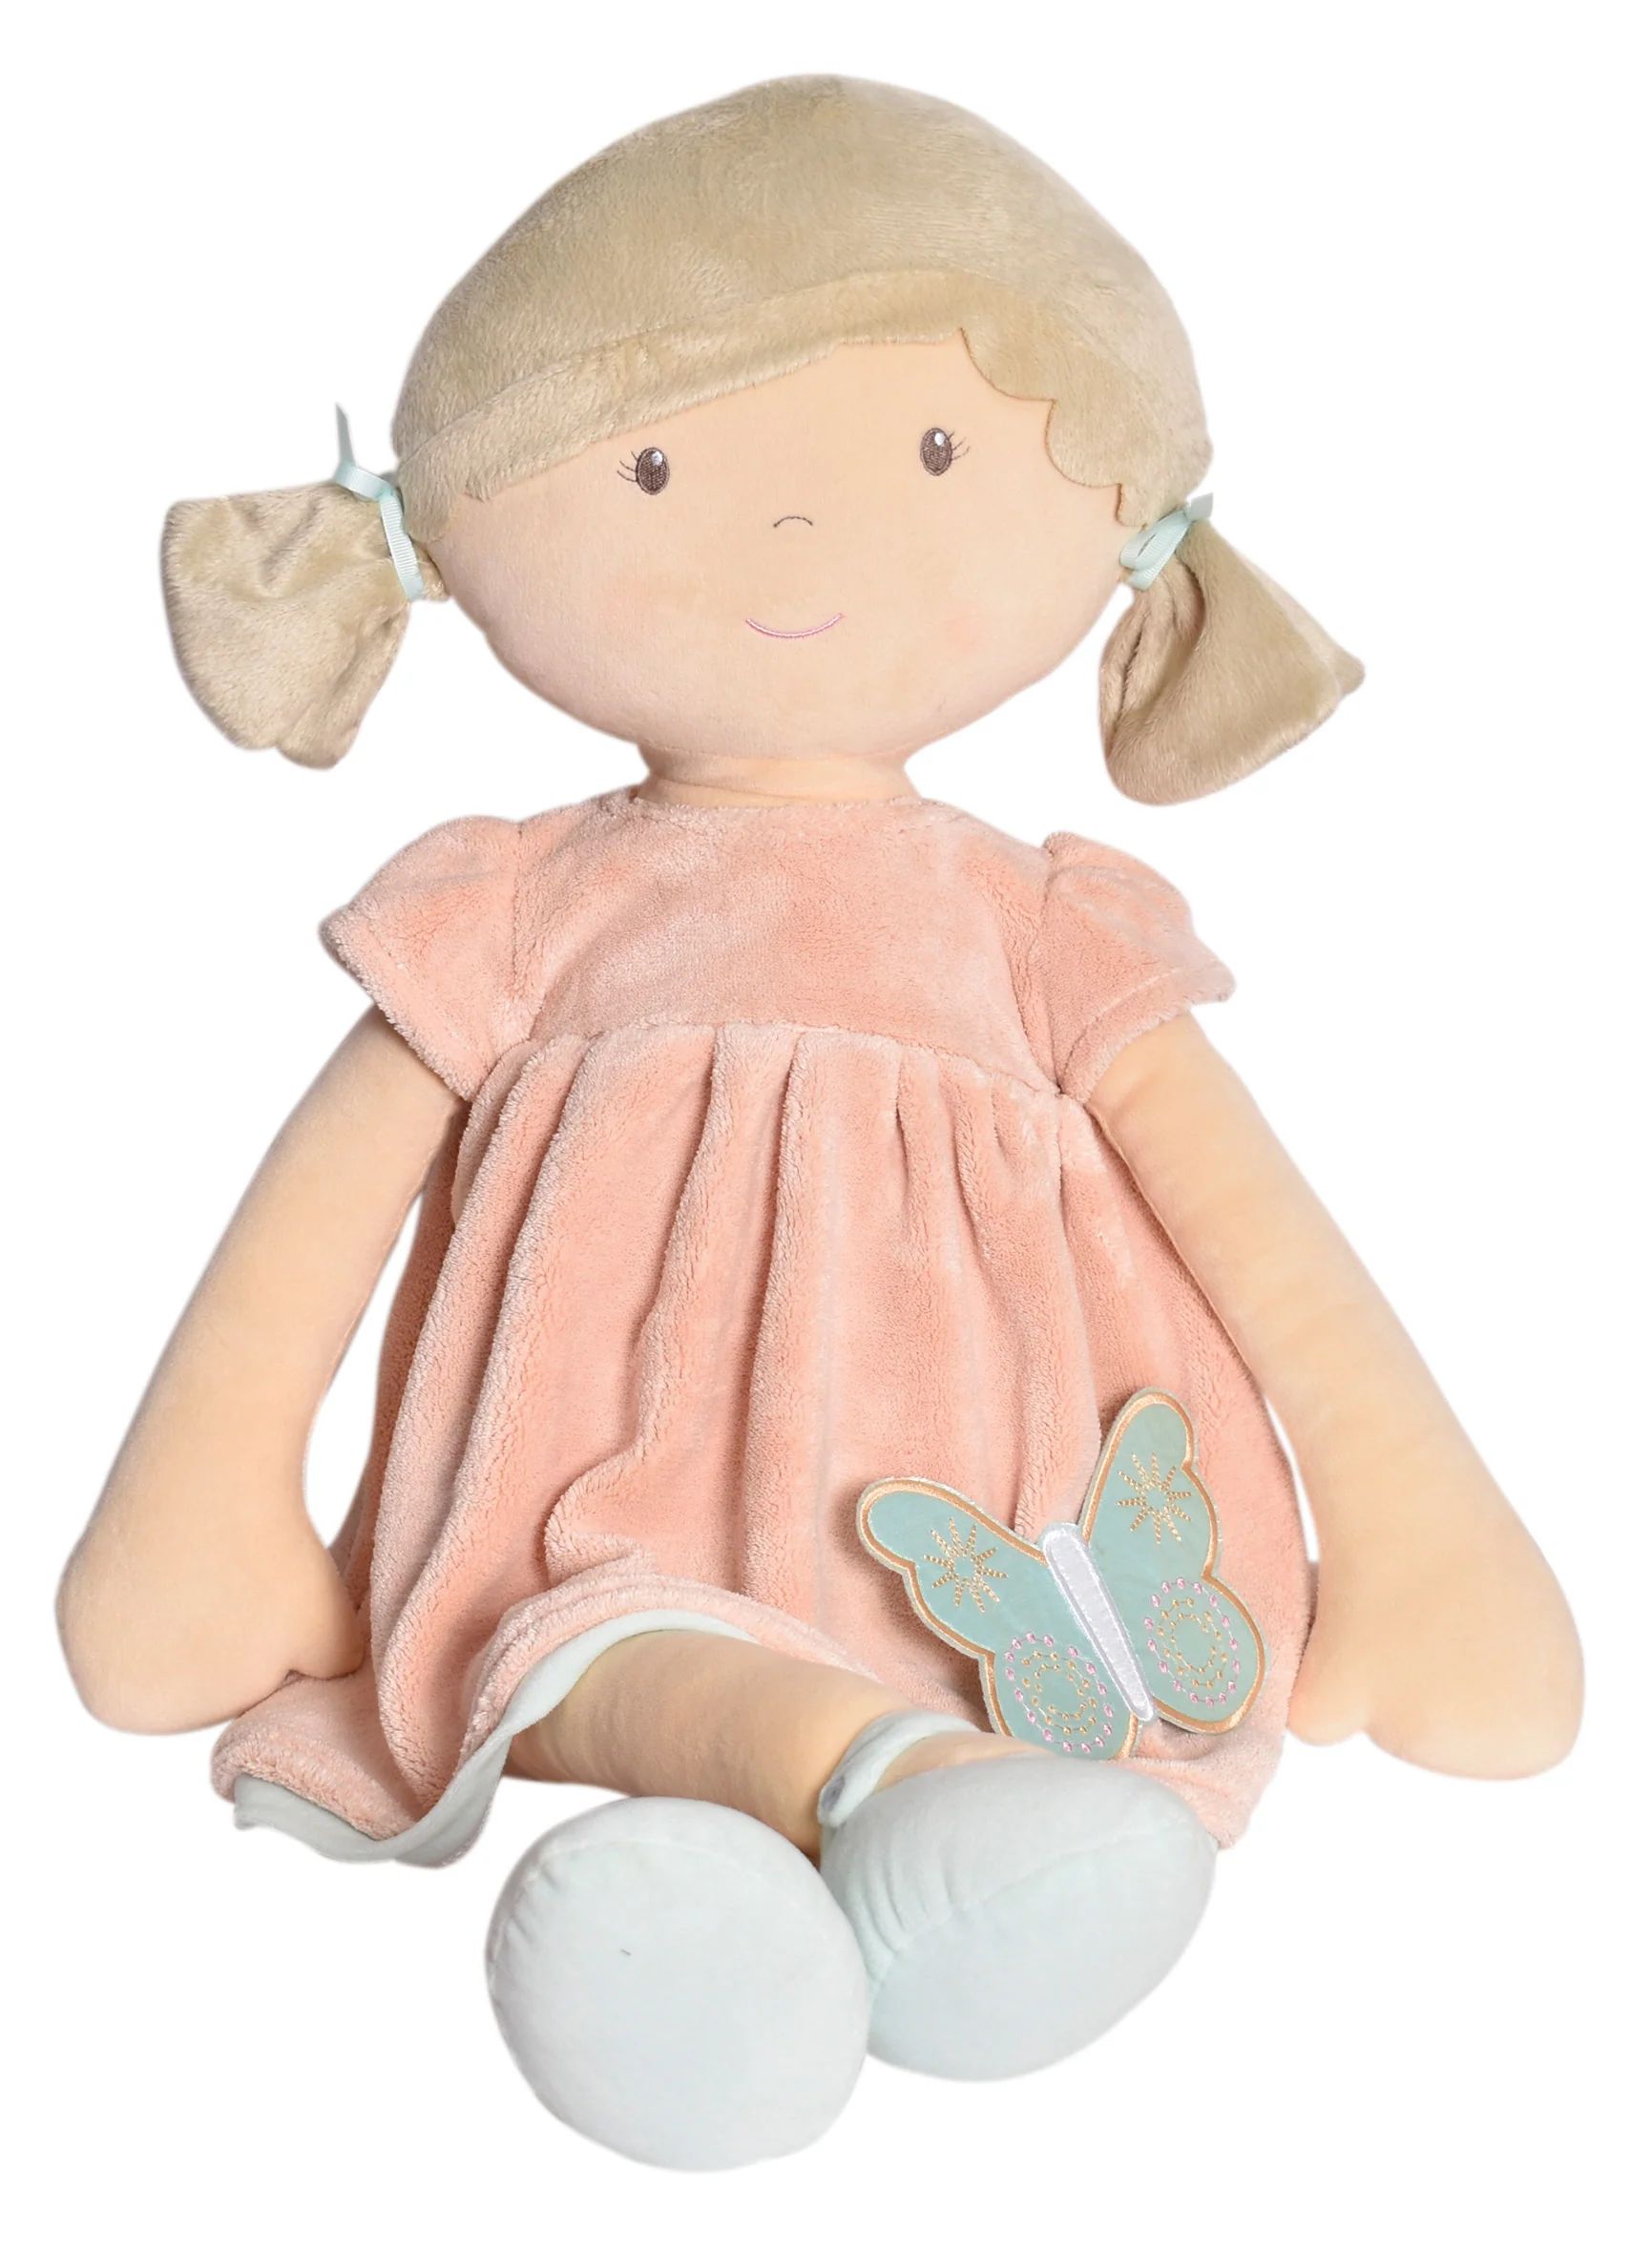 Pia X-Large Doll Brown Hair in Peach and Blue Dress | Tikiri Toys